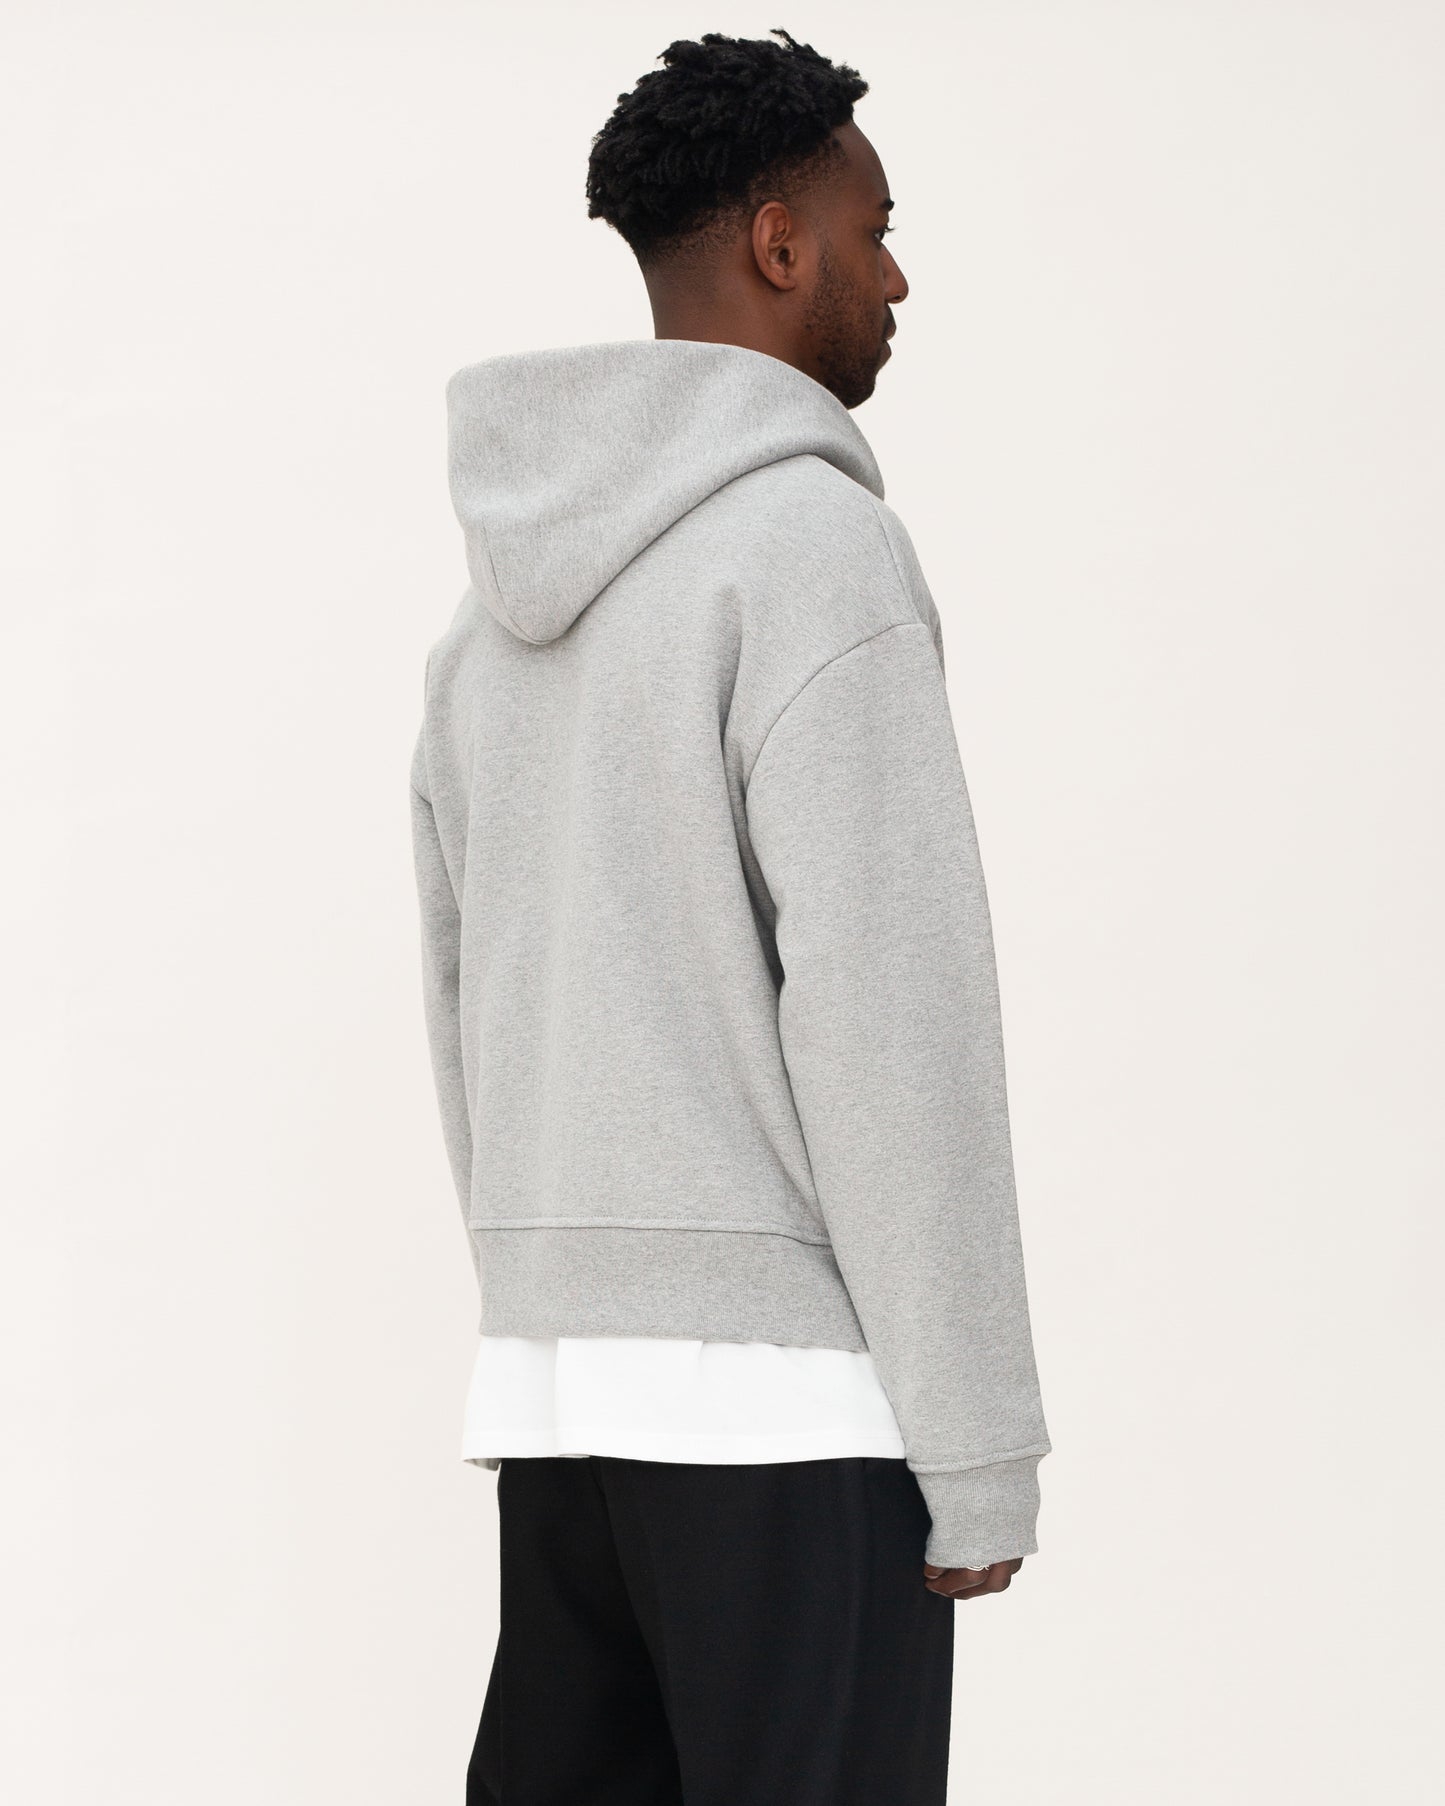 zip up hoodies, grey hoodie, mens hoodie, back side